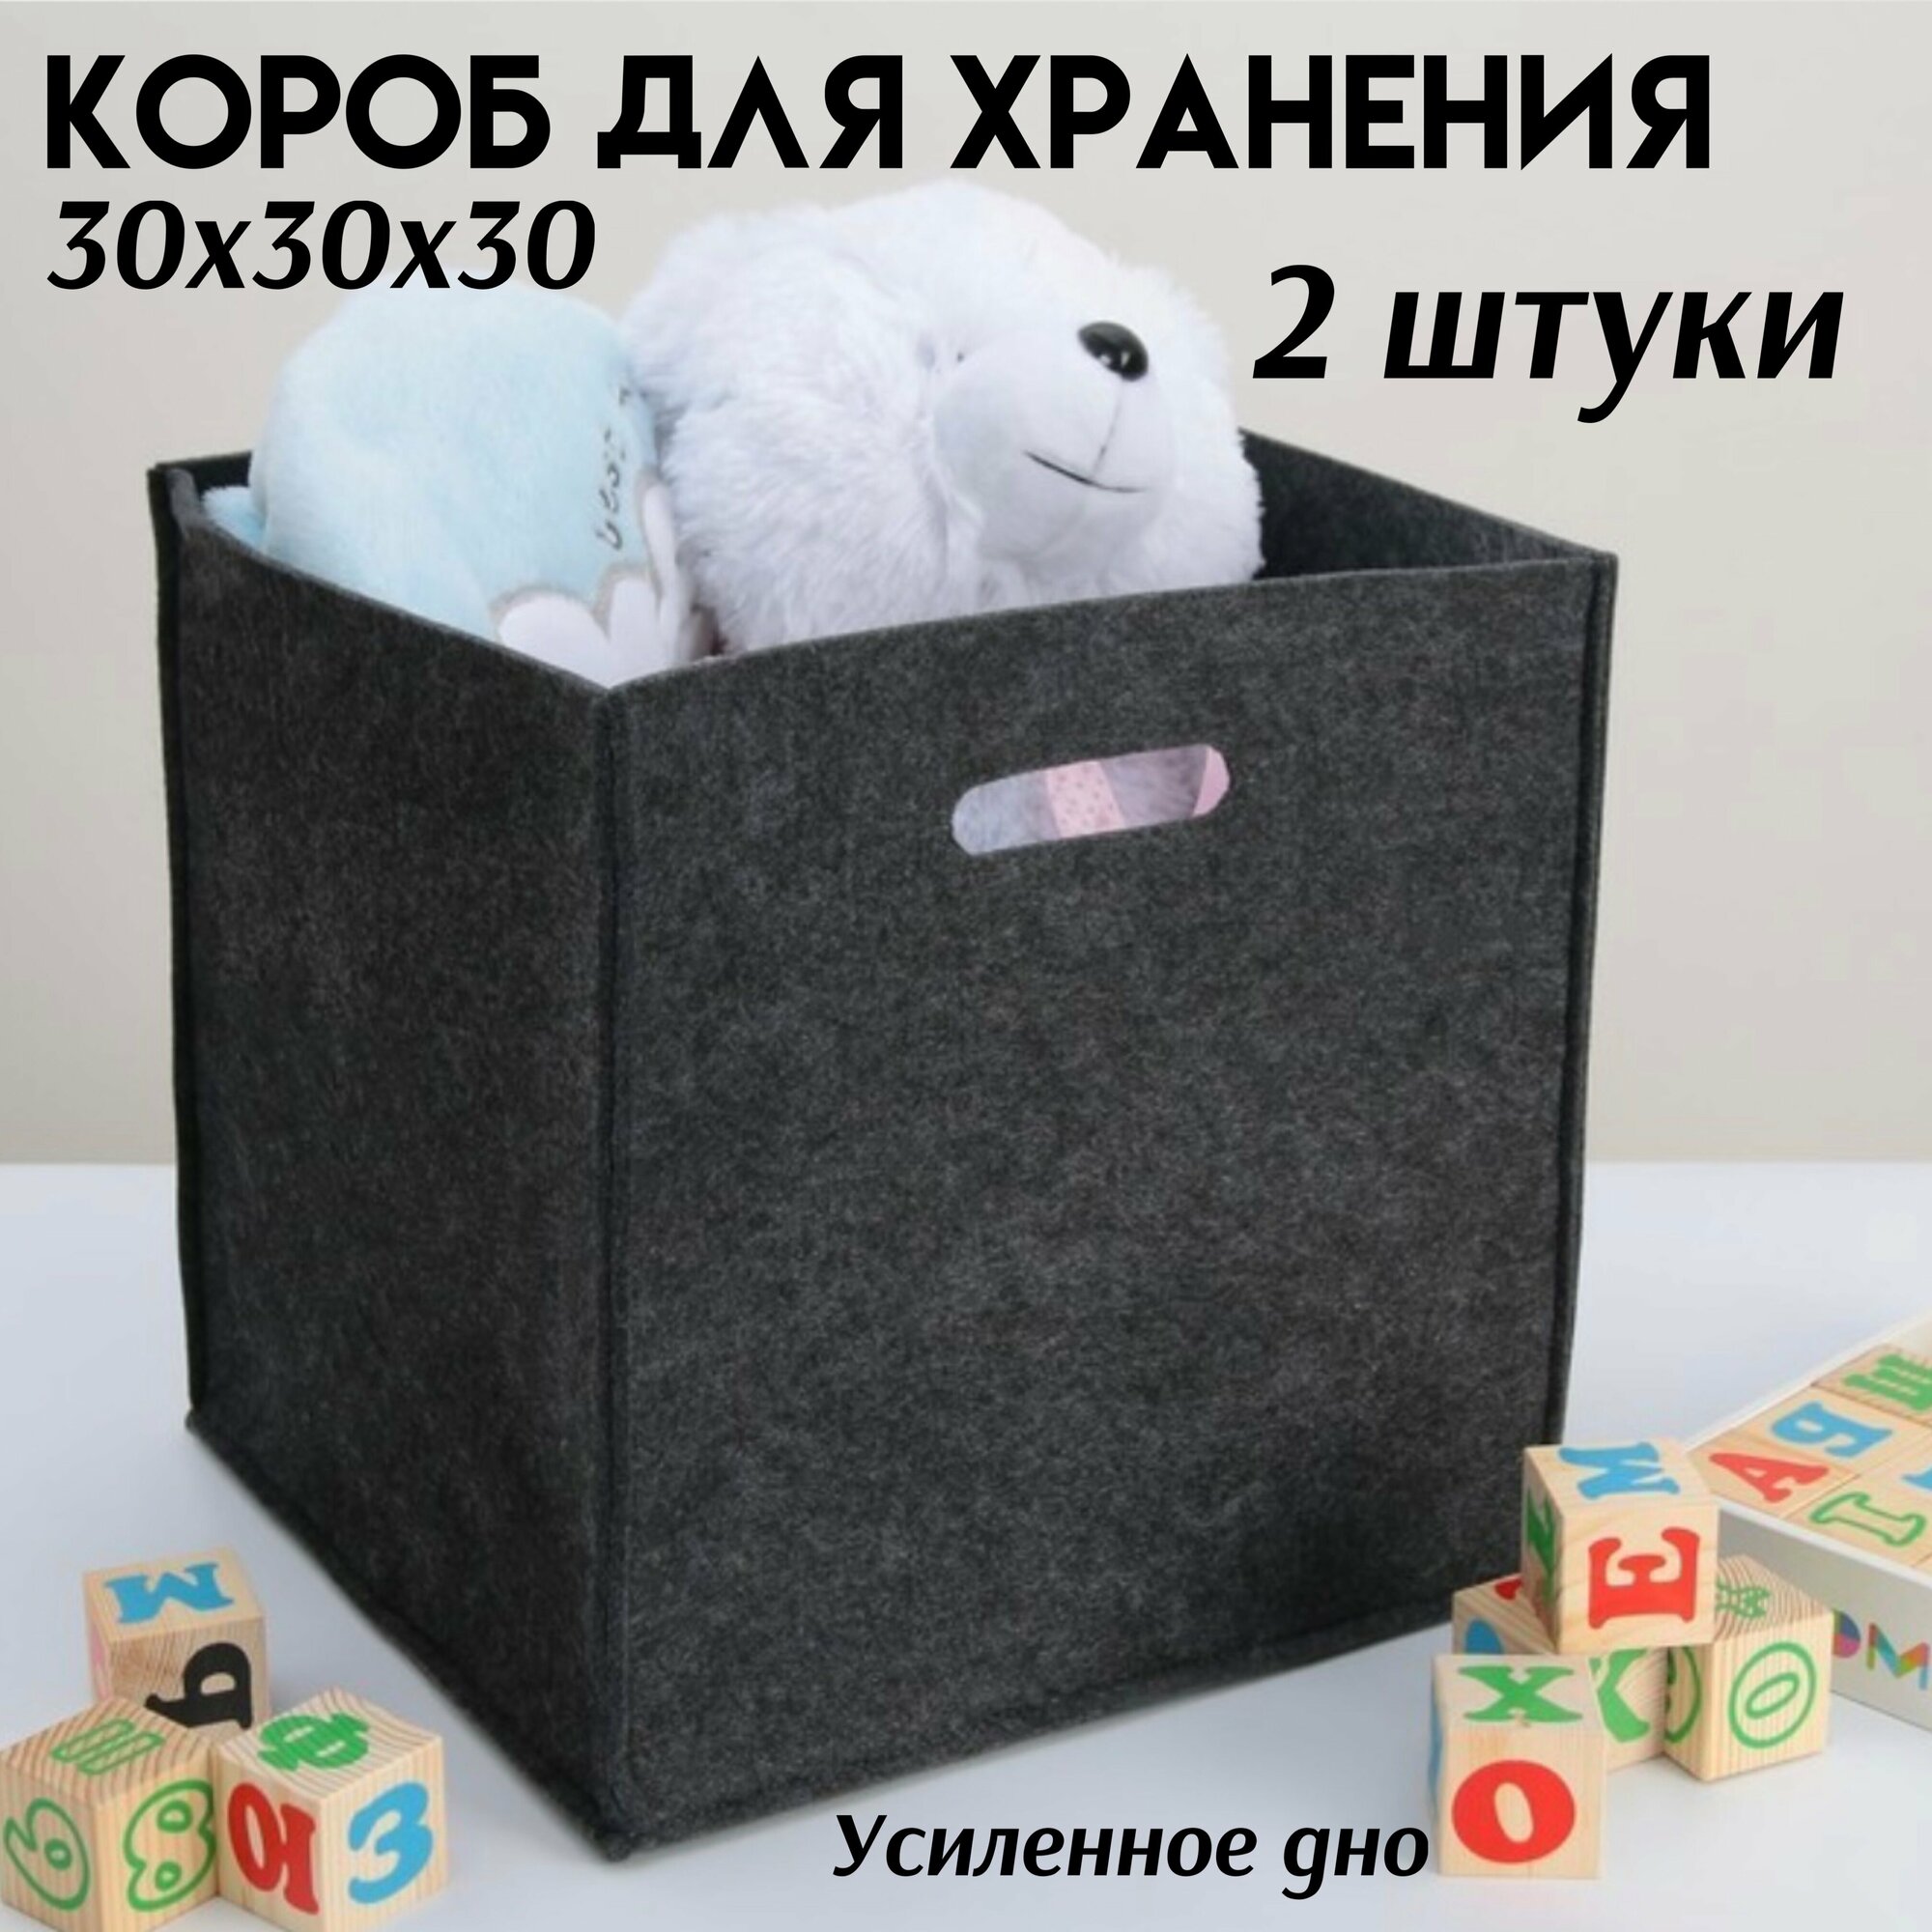 Короб для хранения усиленное дно корзина для игрушек из фетра 30х30х30 серый 2 штуки